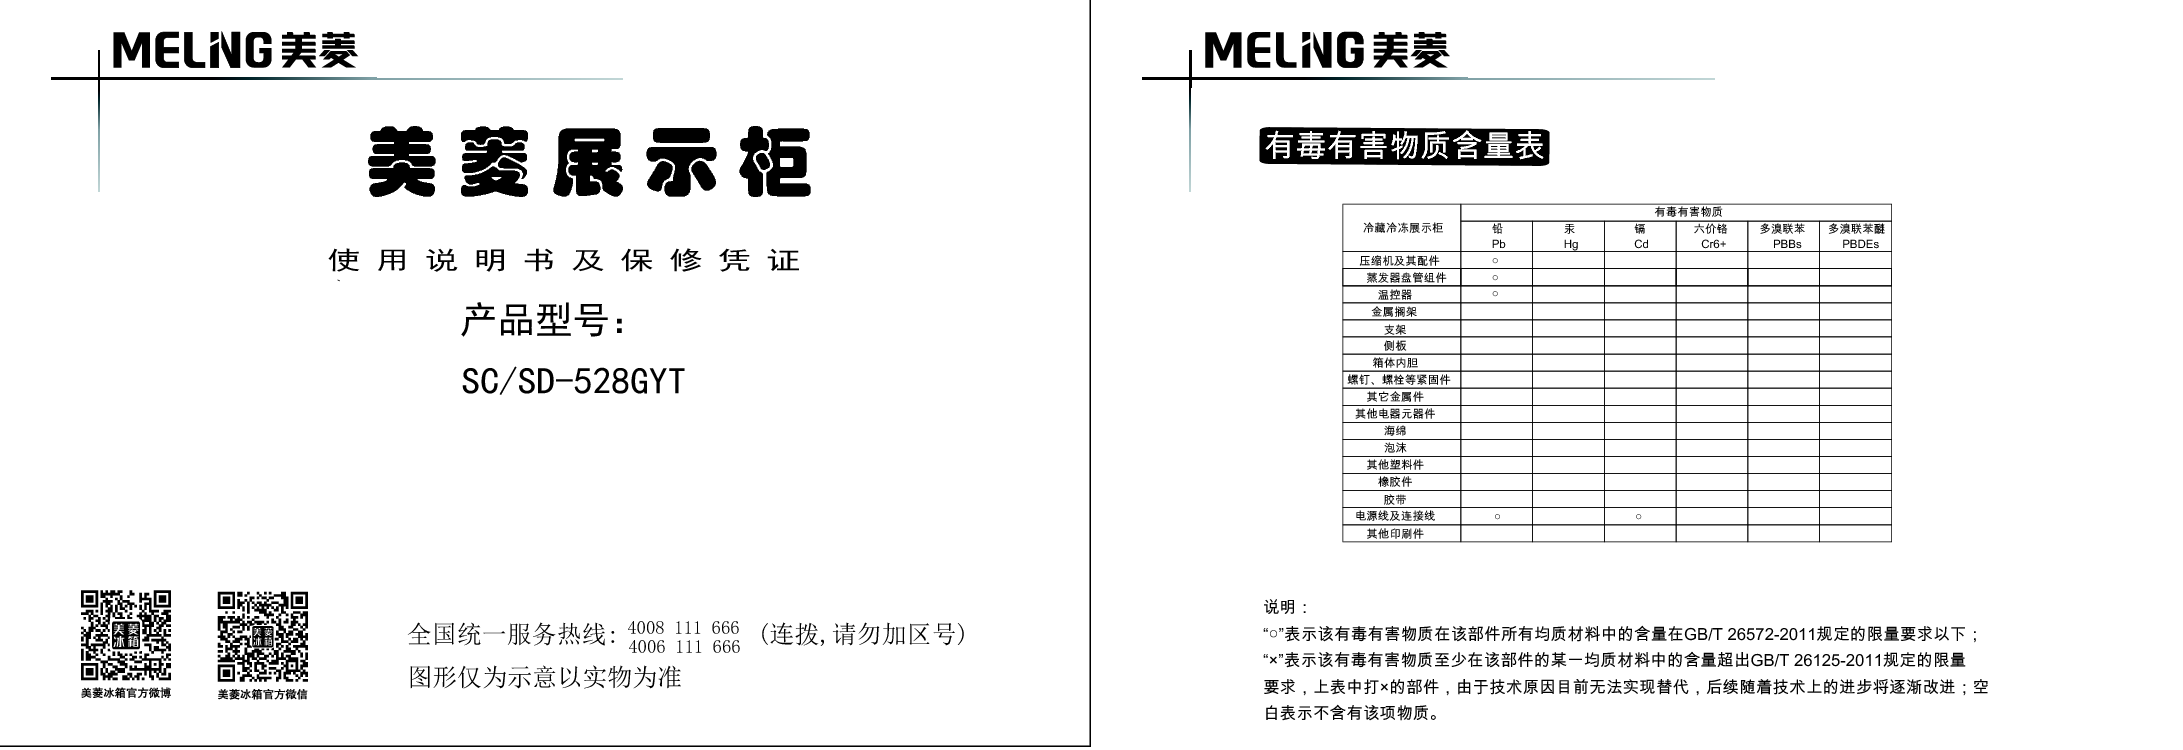 美菱 Meiling SC/SD-528GYT 使用说明书 封面